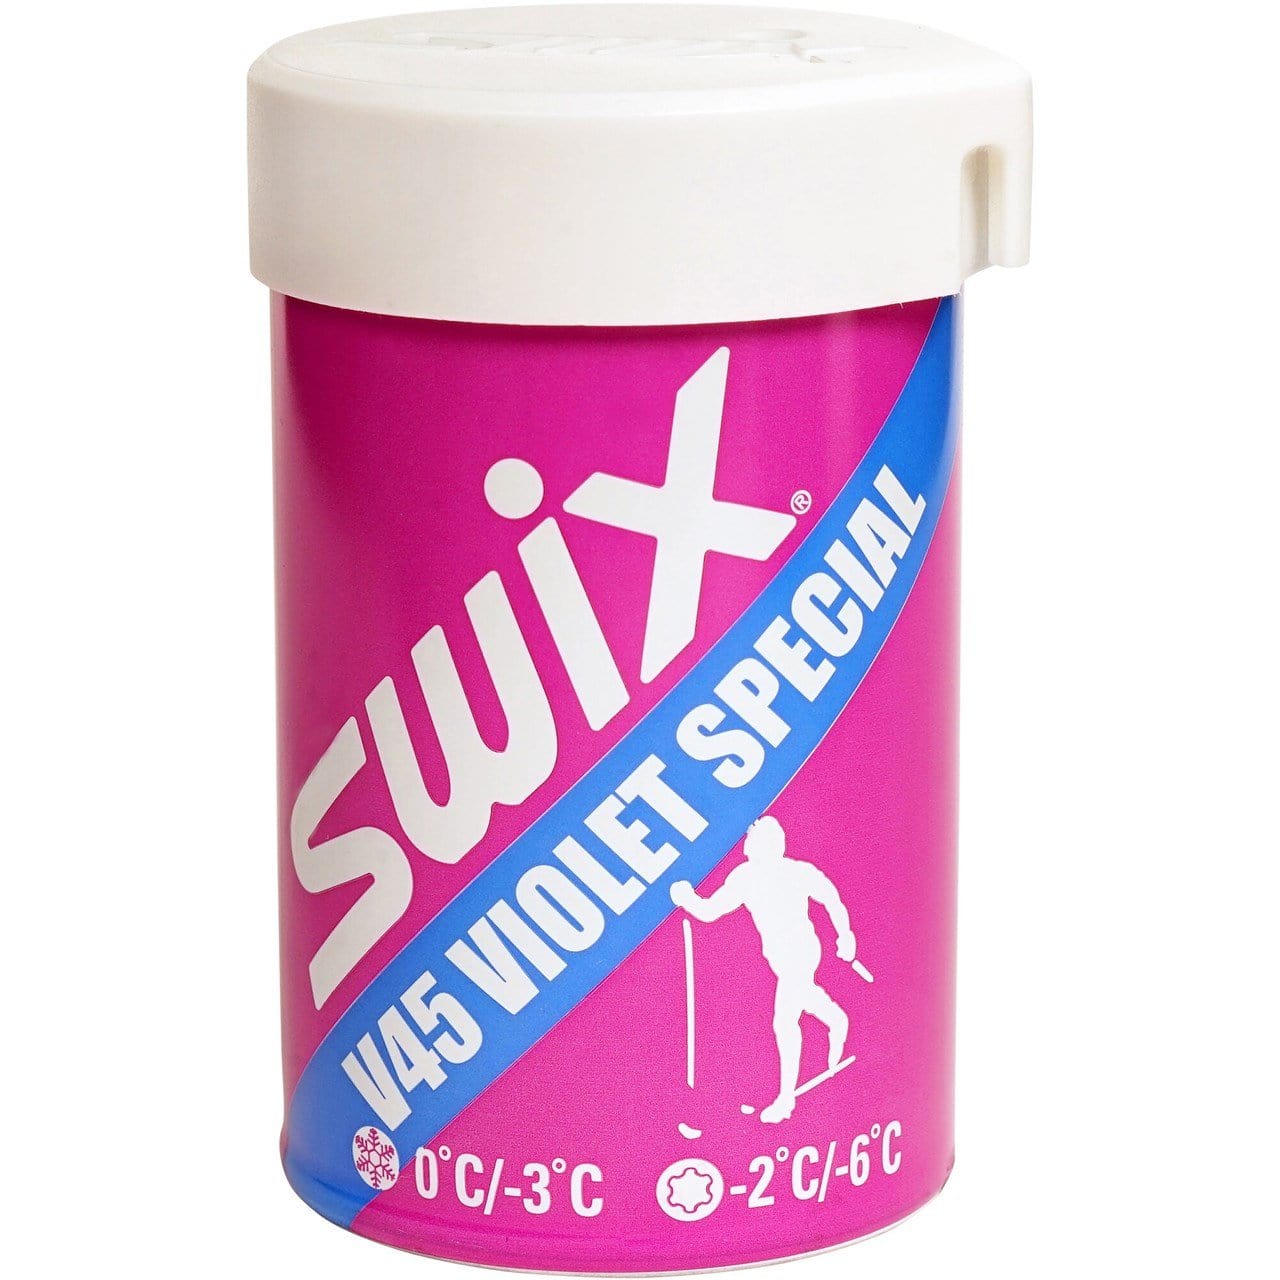 Swix – The Trail Shop